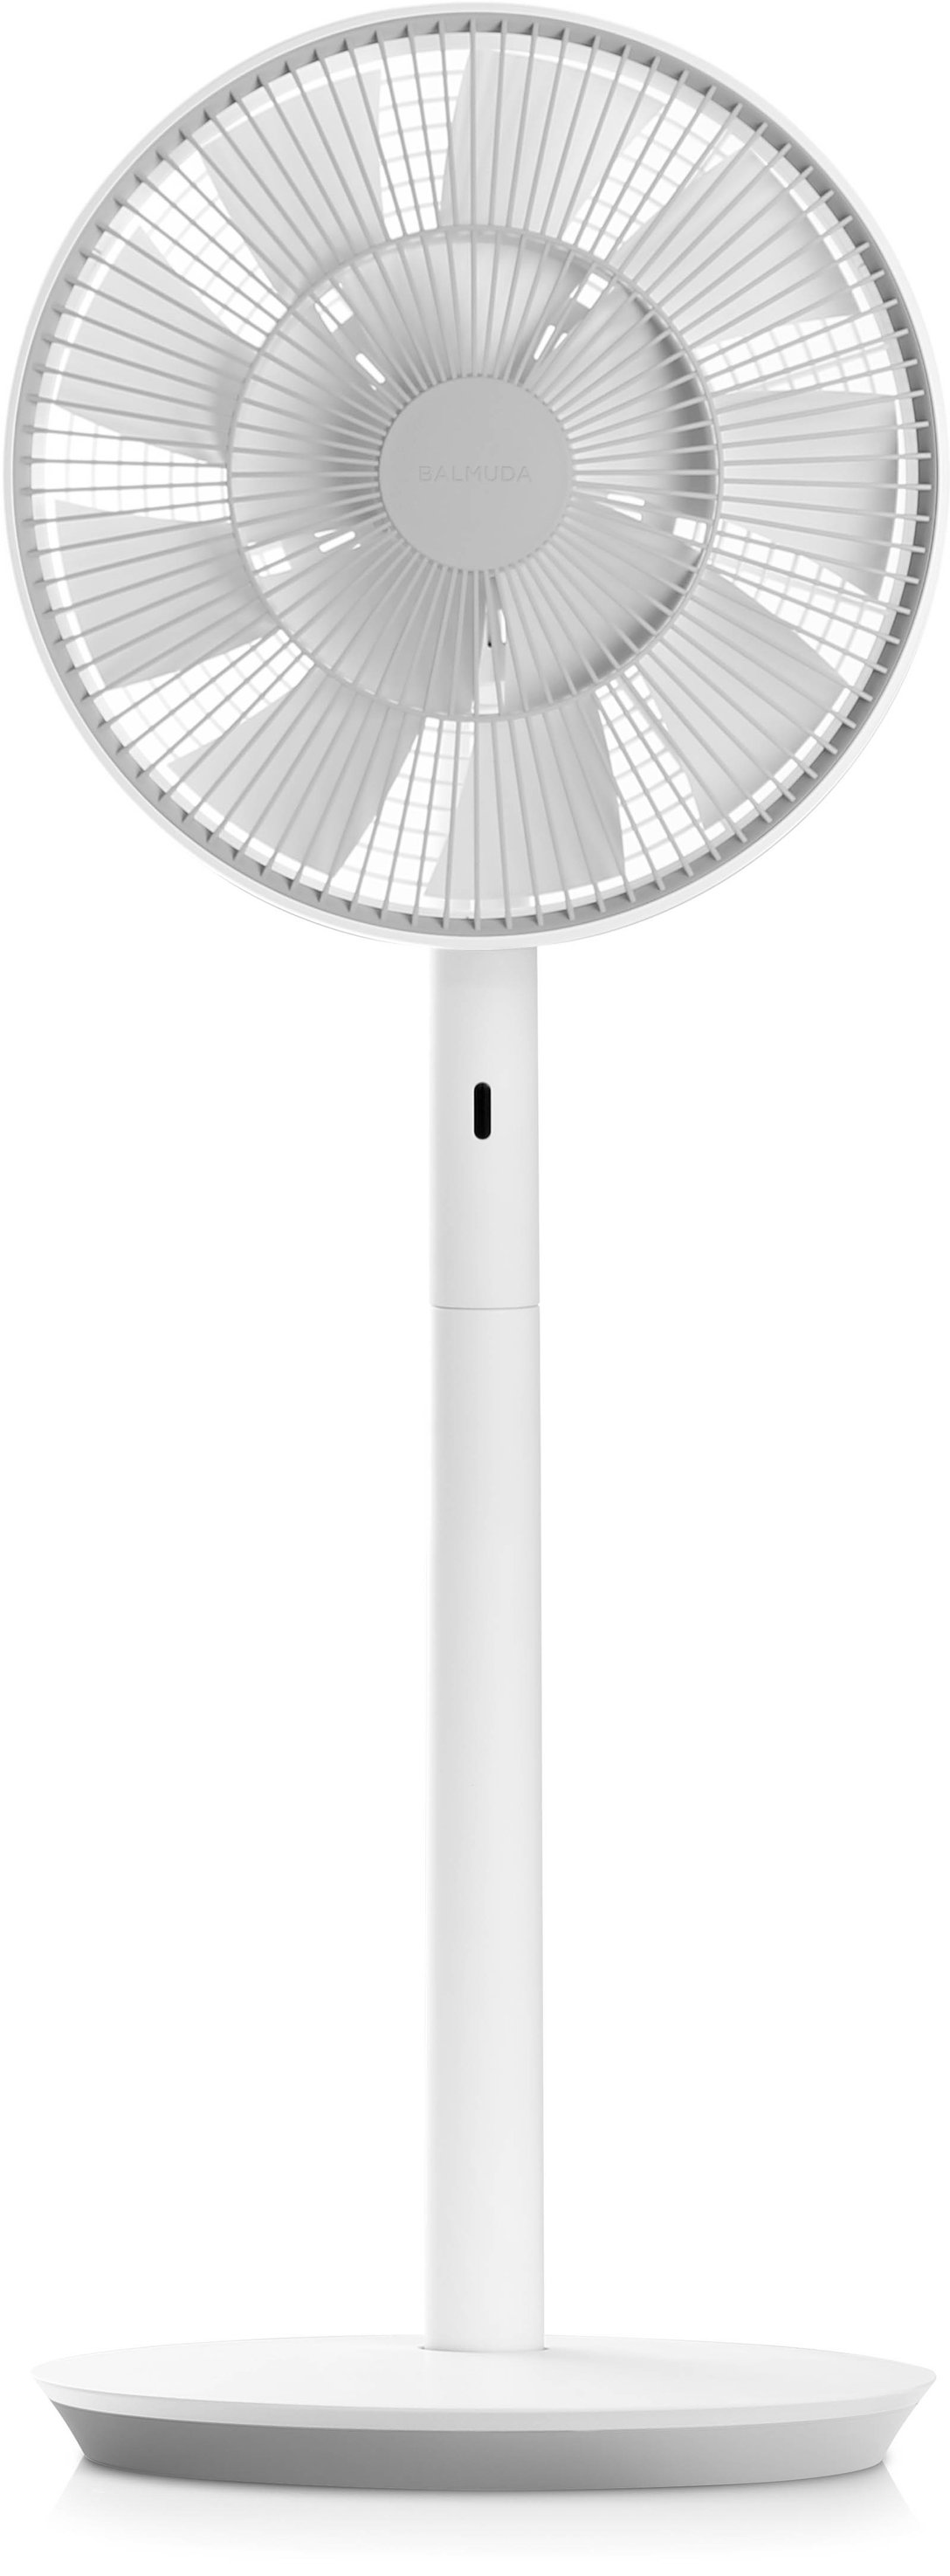 バルミューダが扇風機「ザ・グリーンファン」の今年度の発売を開始